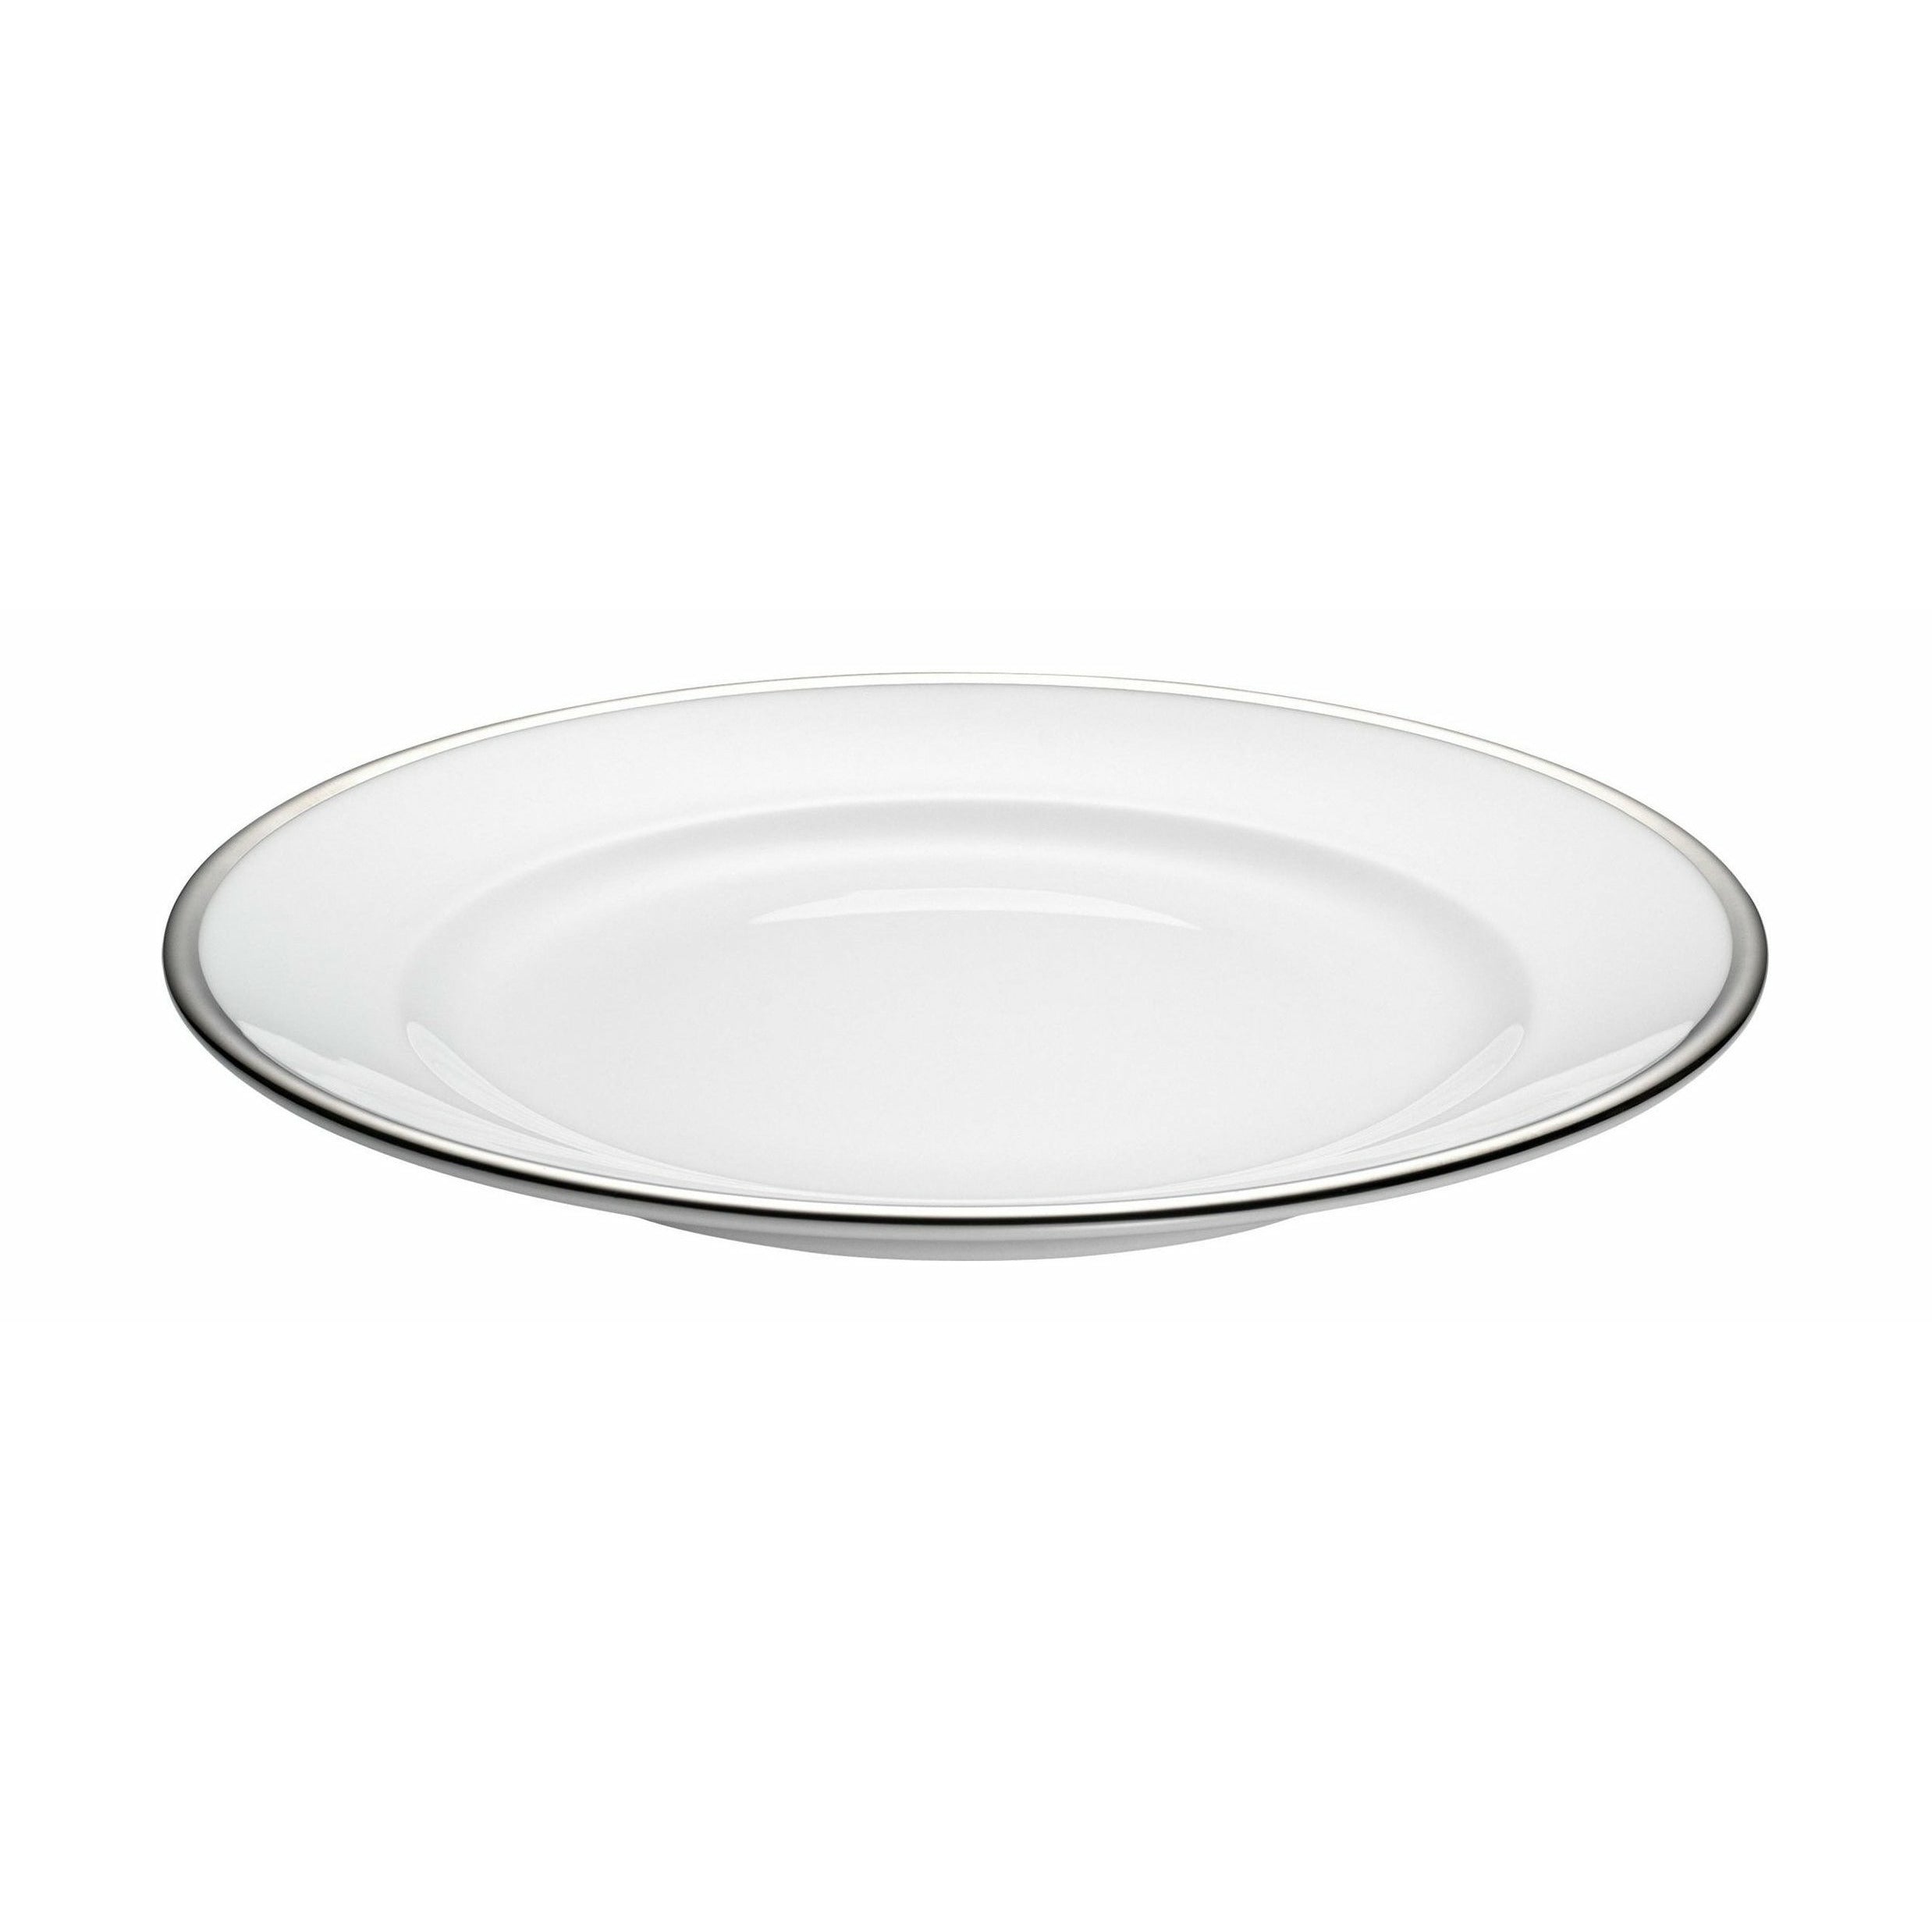 Pillivuyt Assiette de bistrot Ø 21 cm, blanc / argent